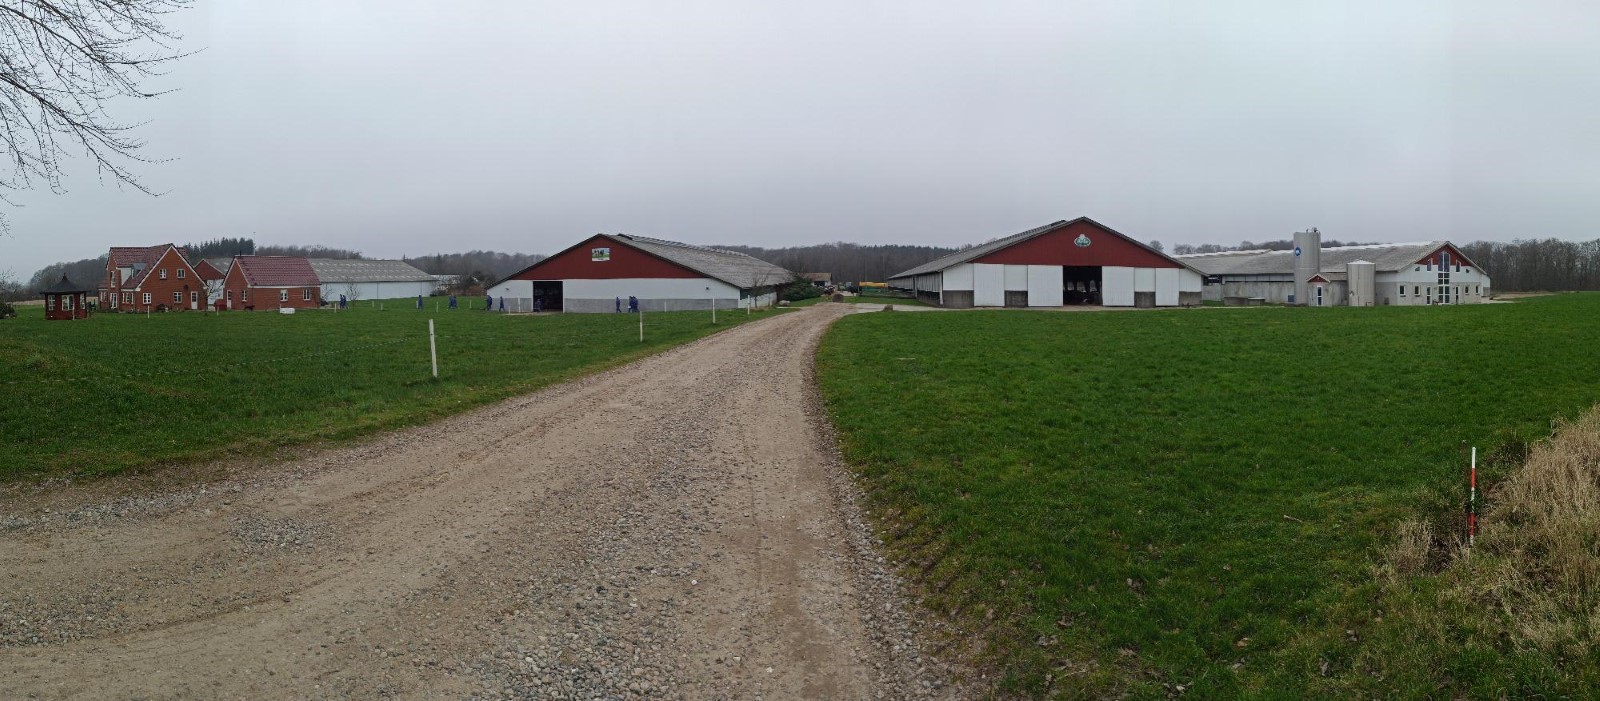 A granxa Fam Kühne IS DK-41 con 575 vacas adultas, 11.500 quilos de leite correxido e 742 hectáreas